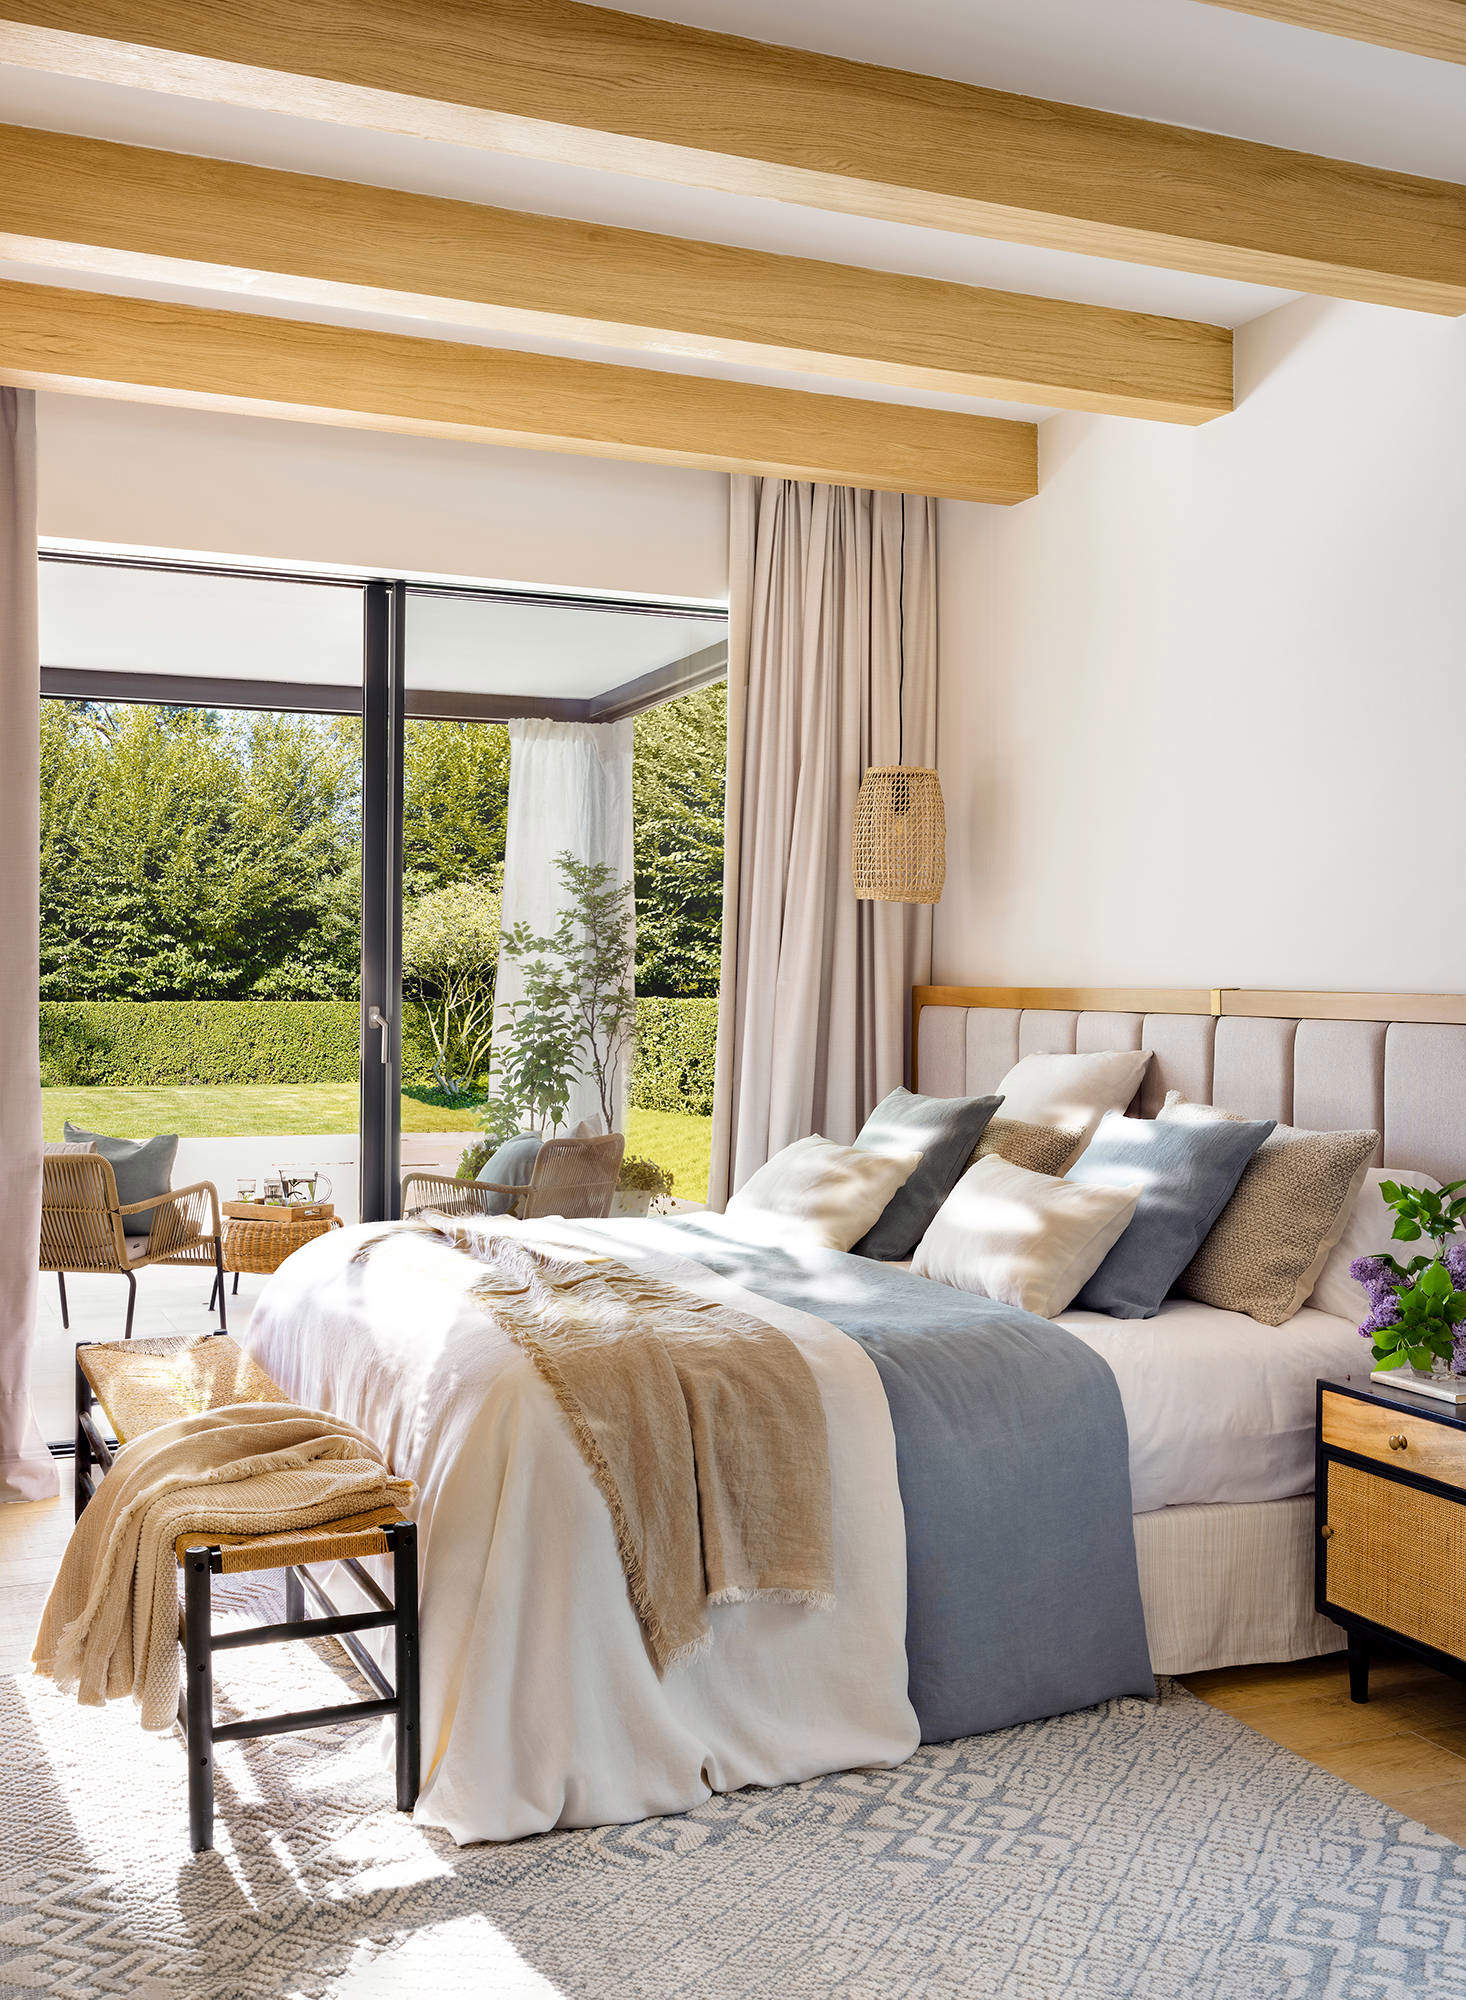 Dormitorio luminoso decorado con los colores naturales de la madera.